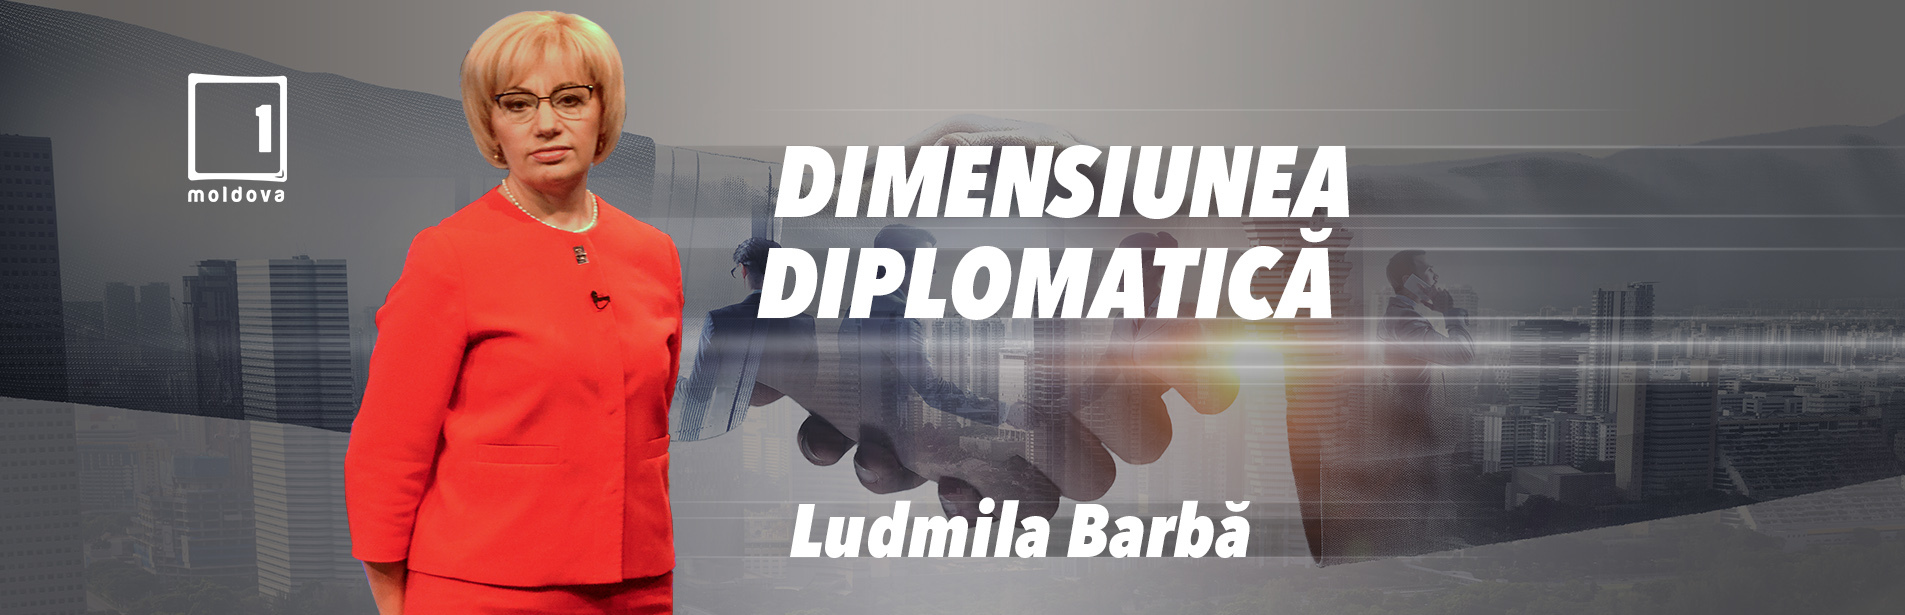 Dimensiune Diplomatică. Interviu cu Valeria Biagiotti, ambasadorul Republicii Italiene în Republica Moldova